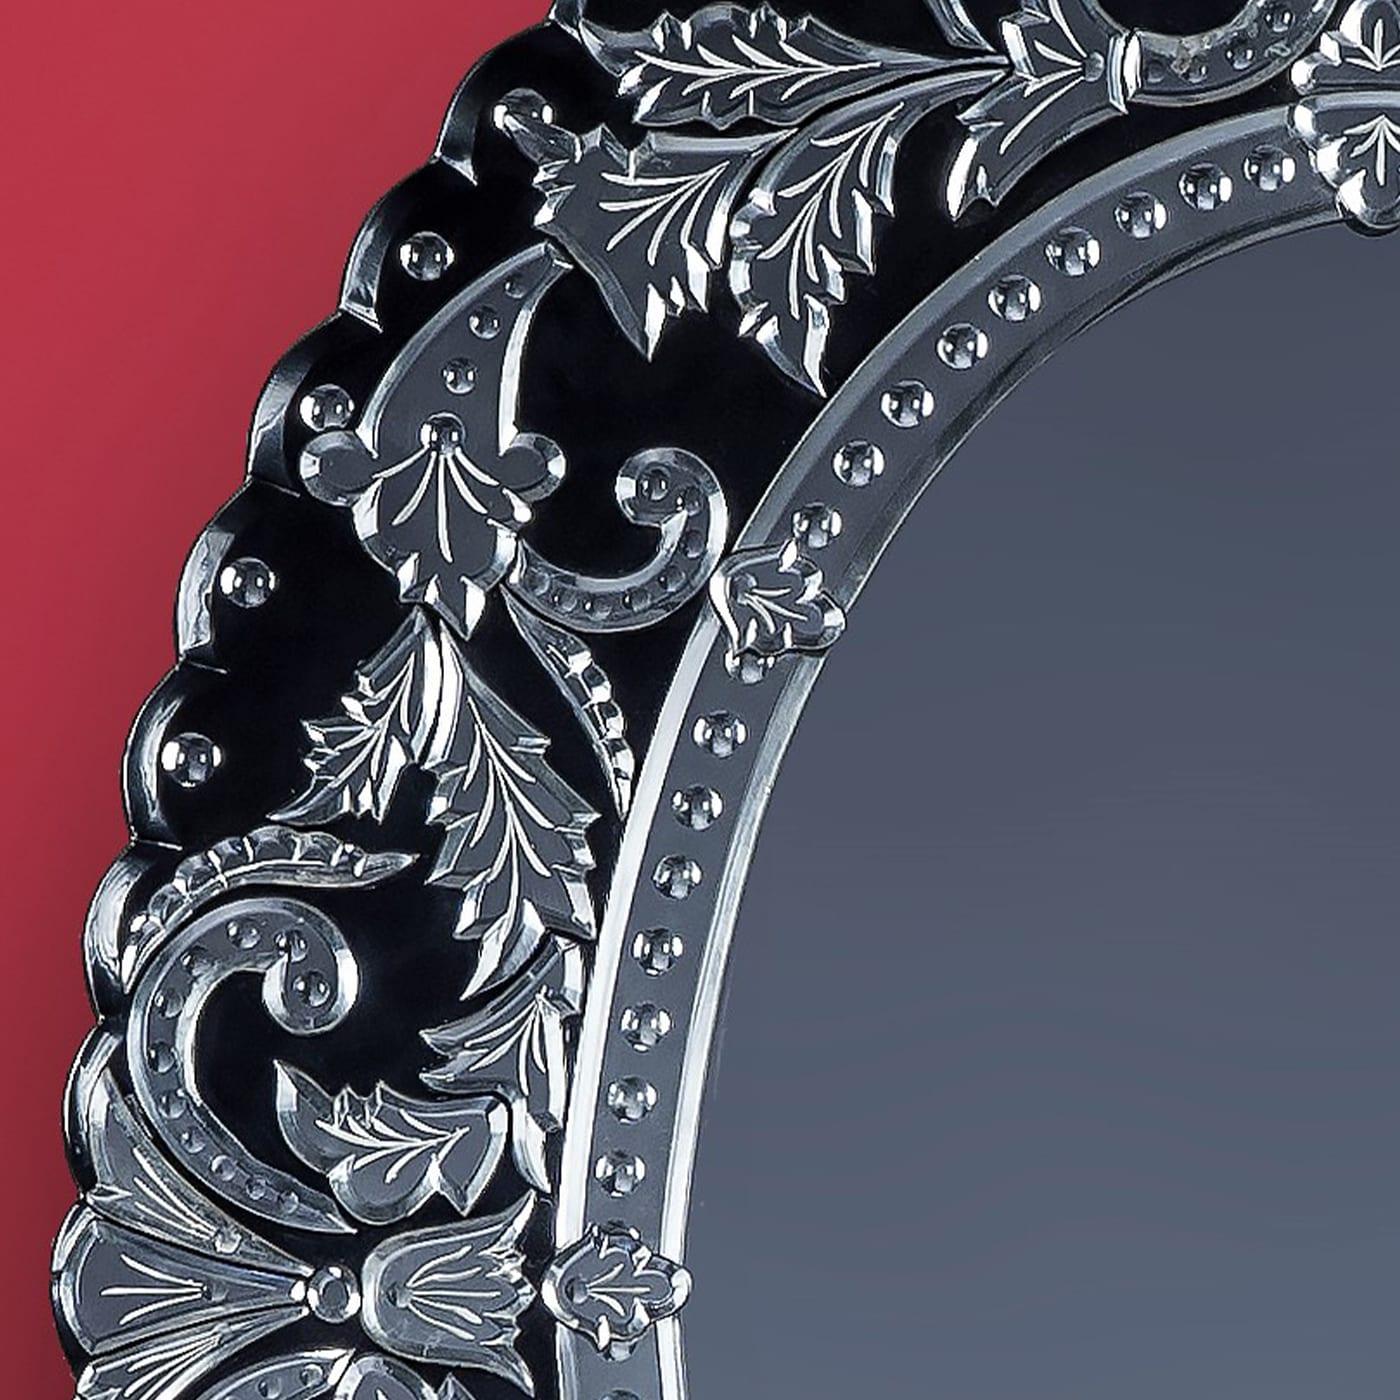 Luxueux miroir ovale en verre de Murano de style français du XIXe siècle, réalisé par Fratelli Tosi d'après un dessin de Fratelli Barbini. La bande qui embrasse le miroir central est gravée d'un motif floral, tout le cadre extérieur est une